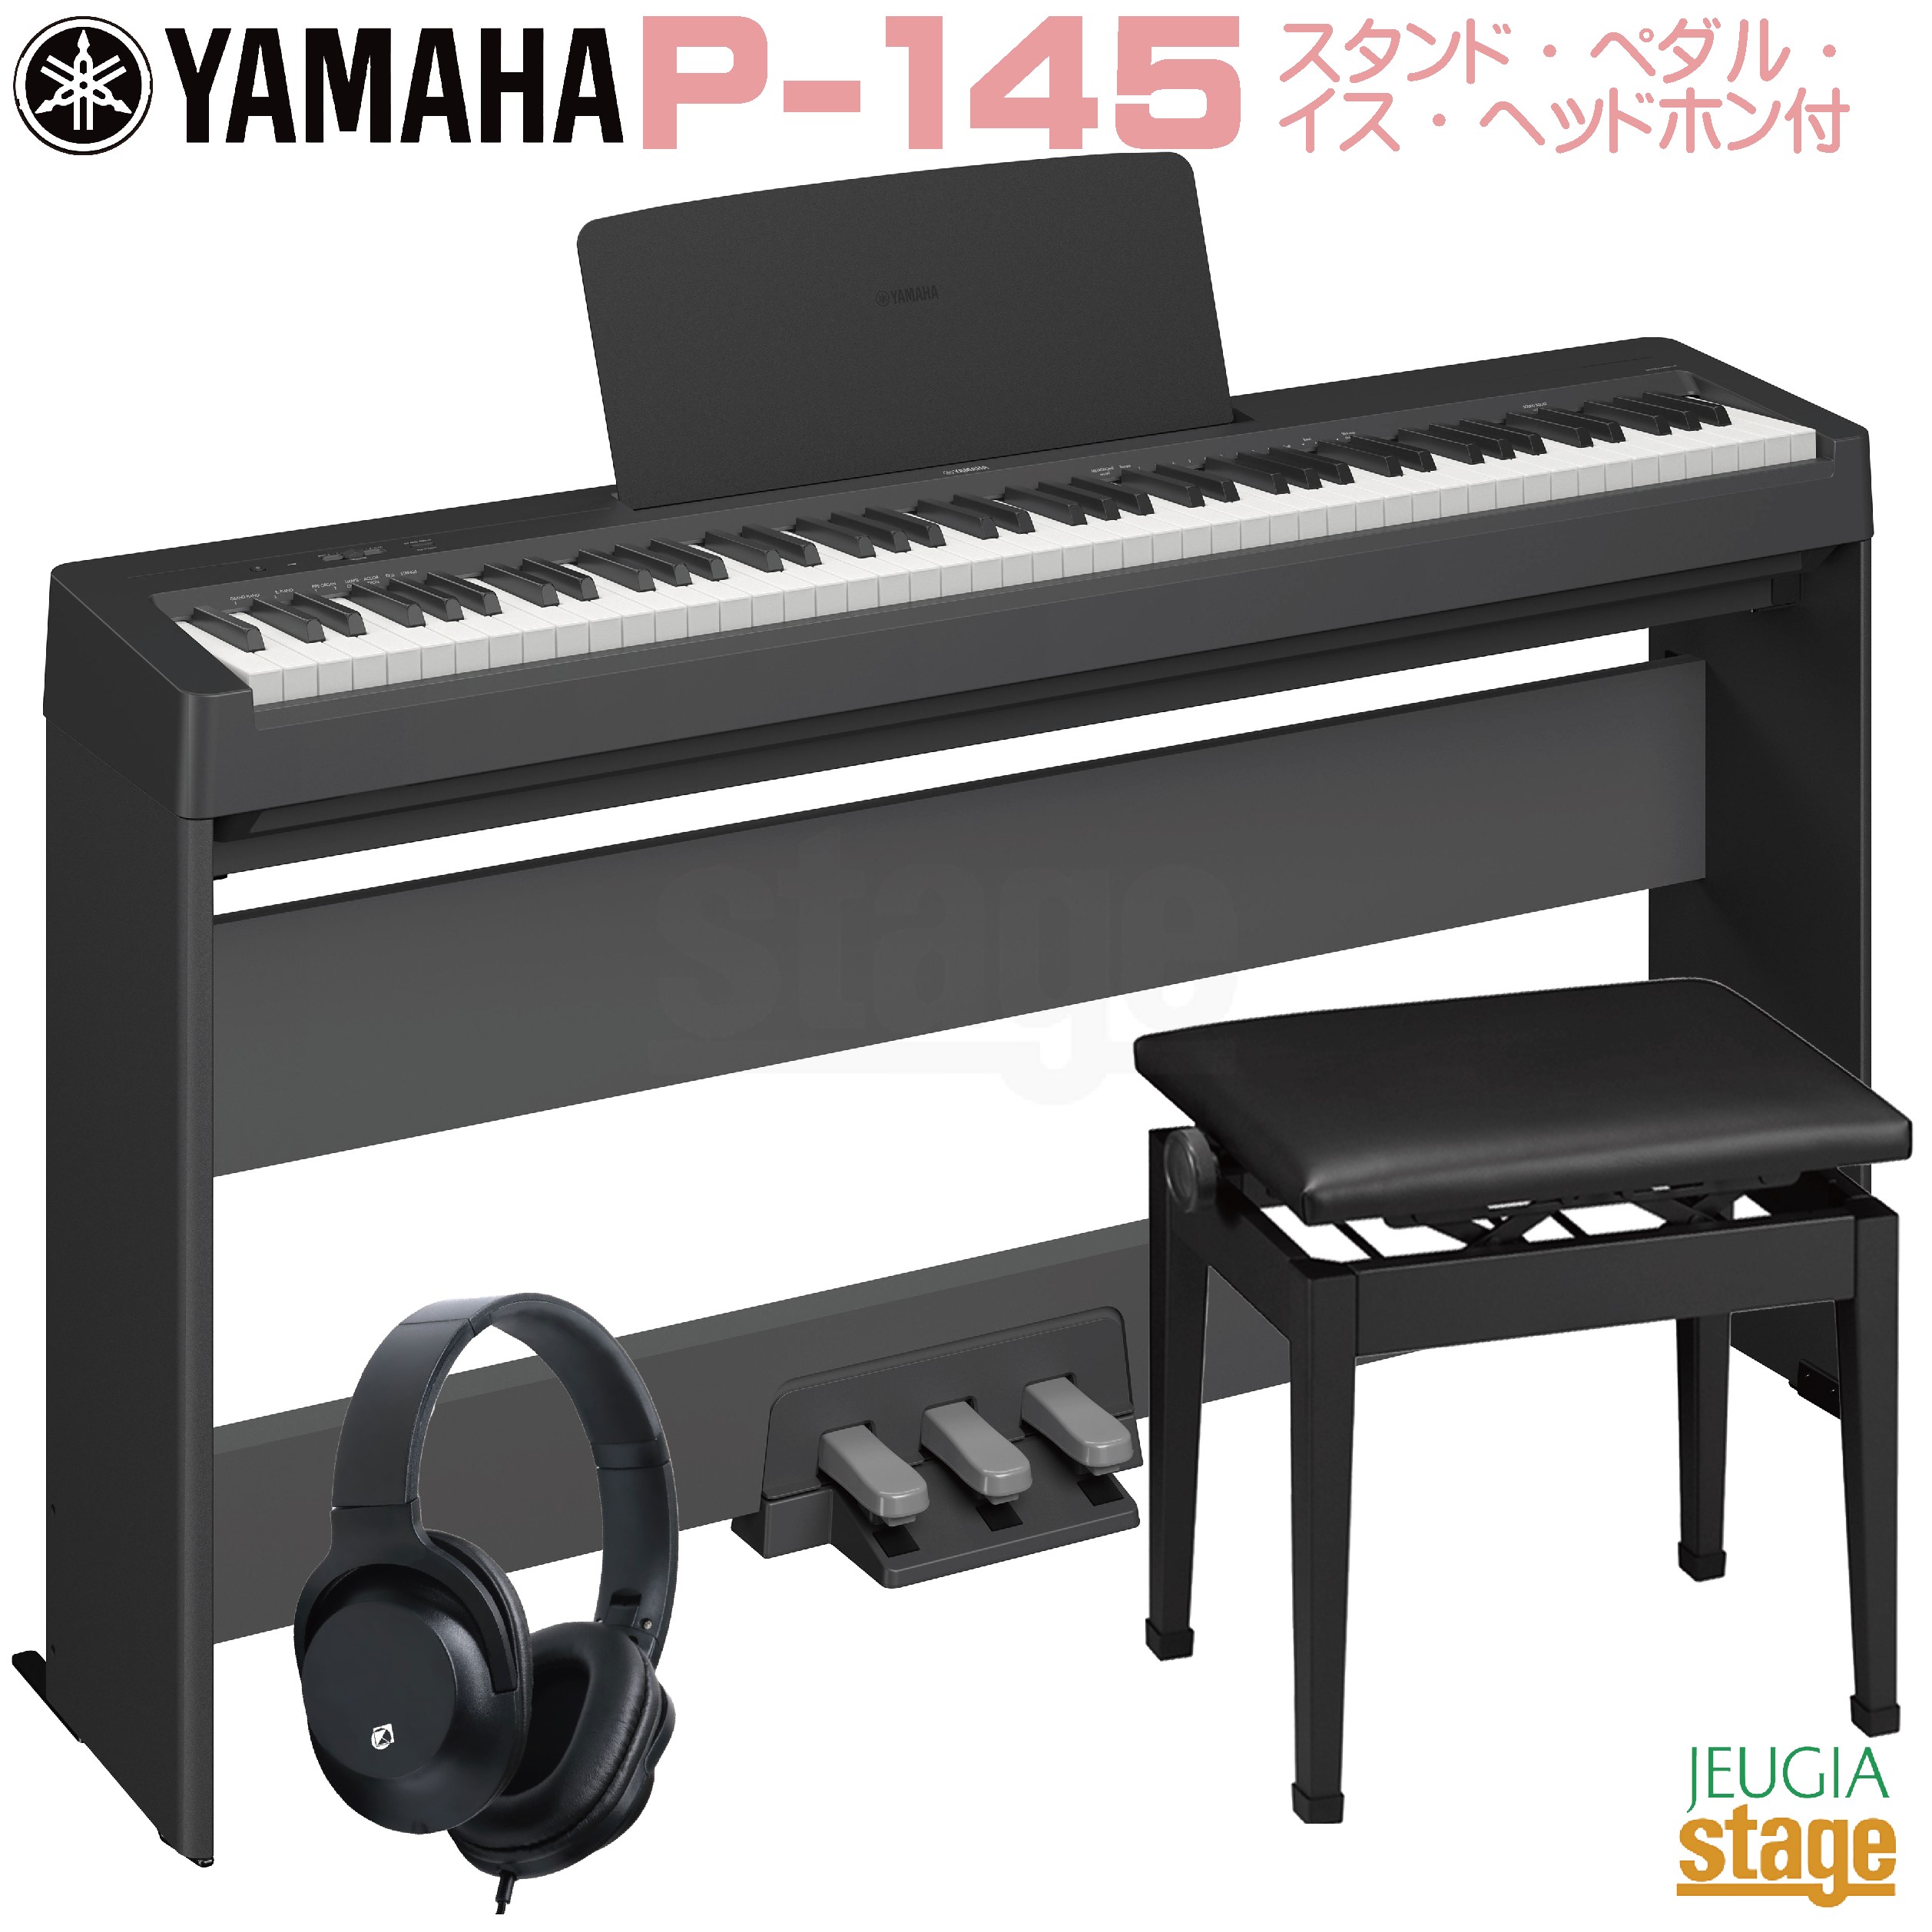 YAMAHA P-45B 電子ピアノ XスタンドXイス 付属品 - その他